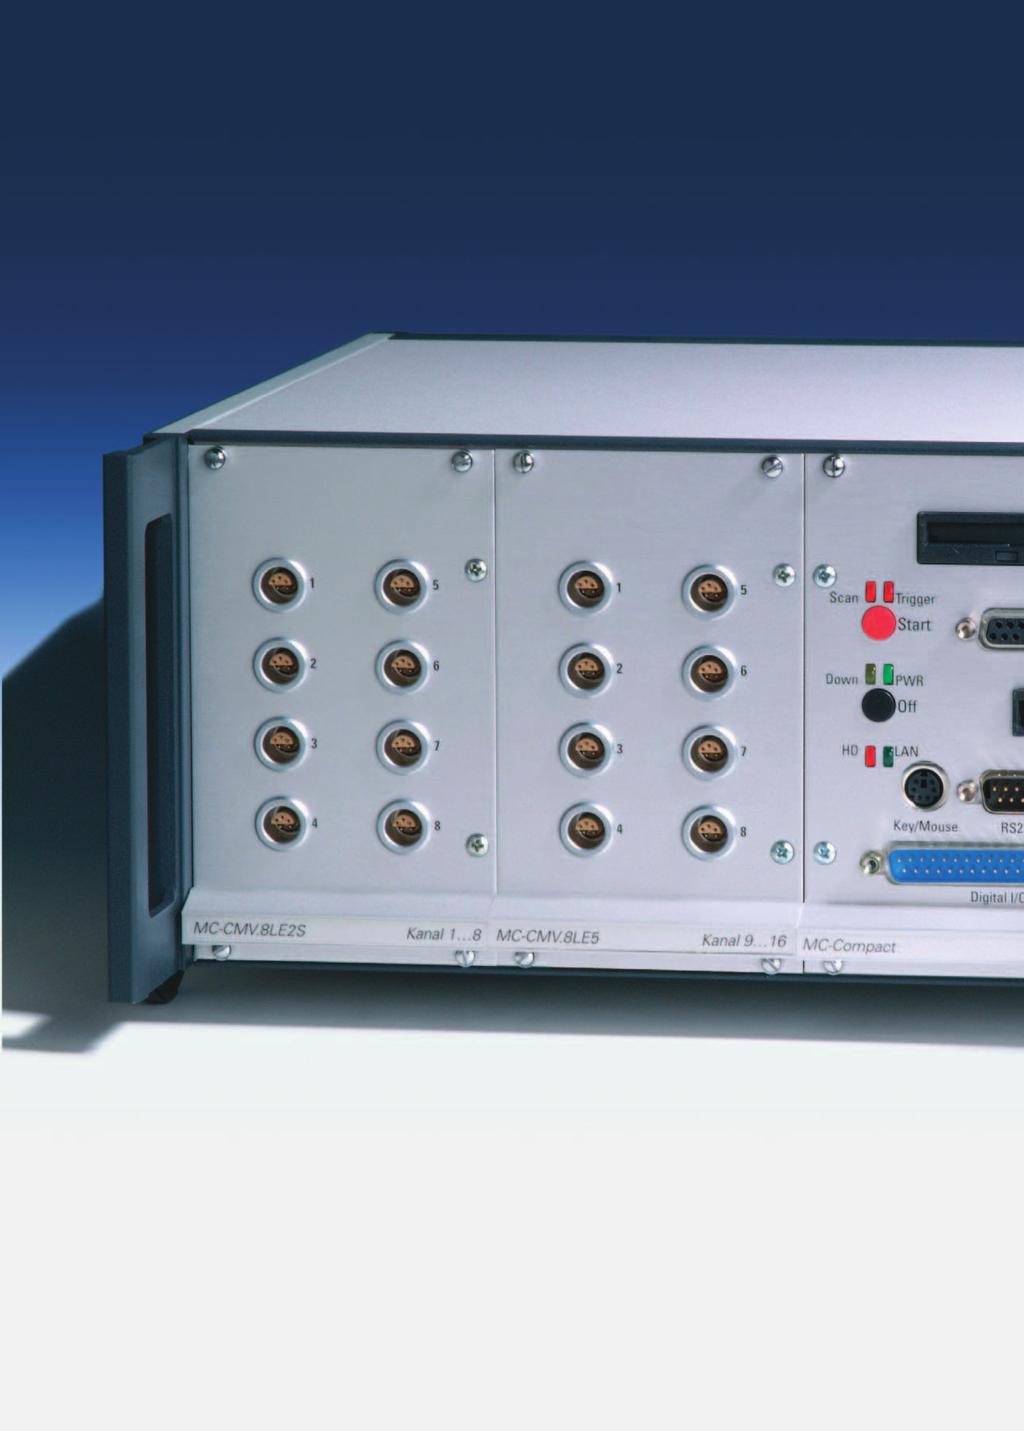 Compact Professionell erfassen und auswerten Autarke Stand-Alone-Messstationen oder Netzwerk-Systeme Flexible Anschlusstechnik, basierend auf 5B-Technik F l e x i b e l b i s i n s D e t a i l : B a